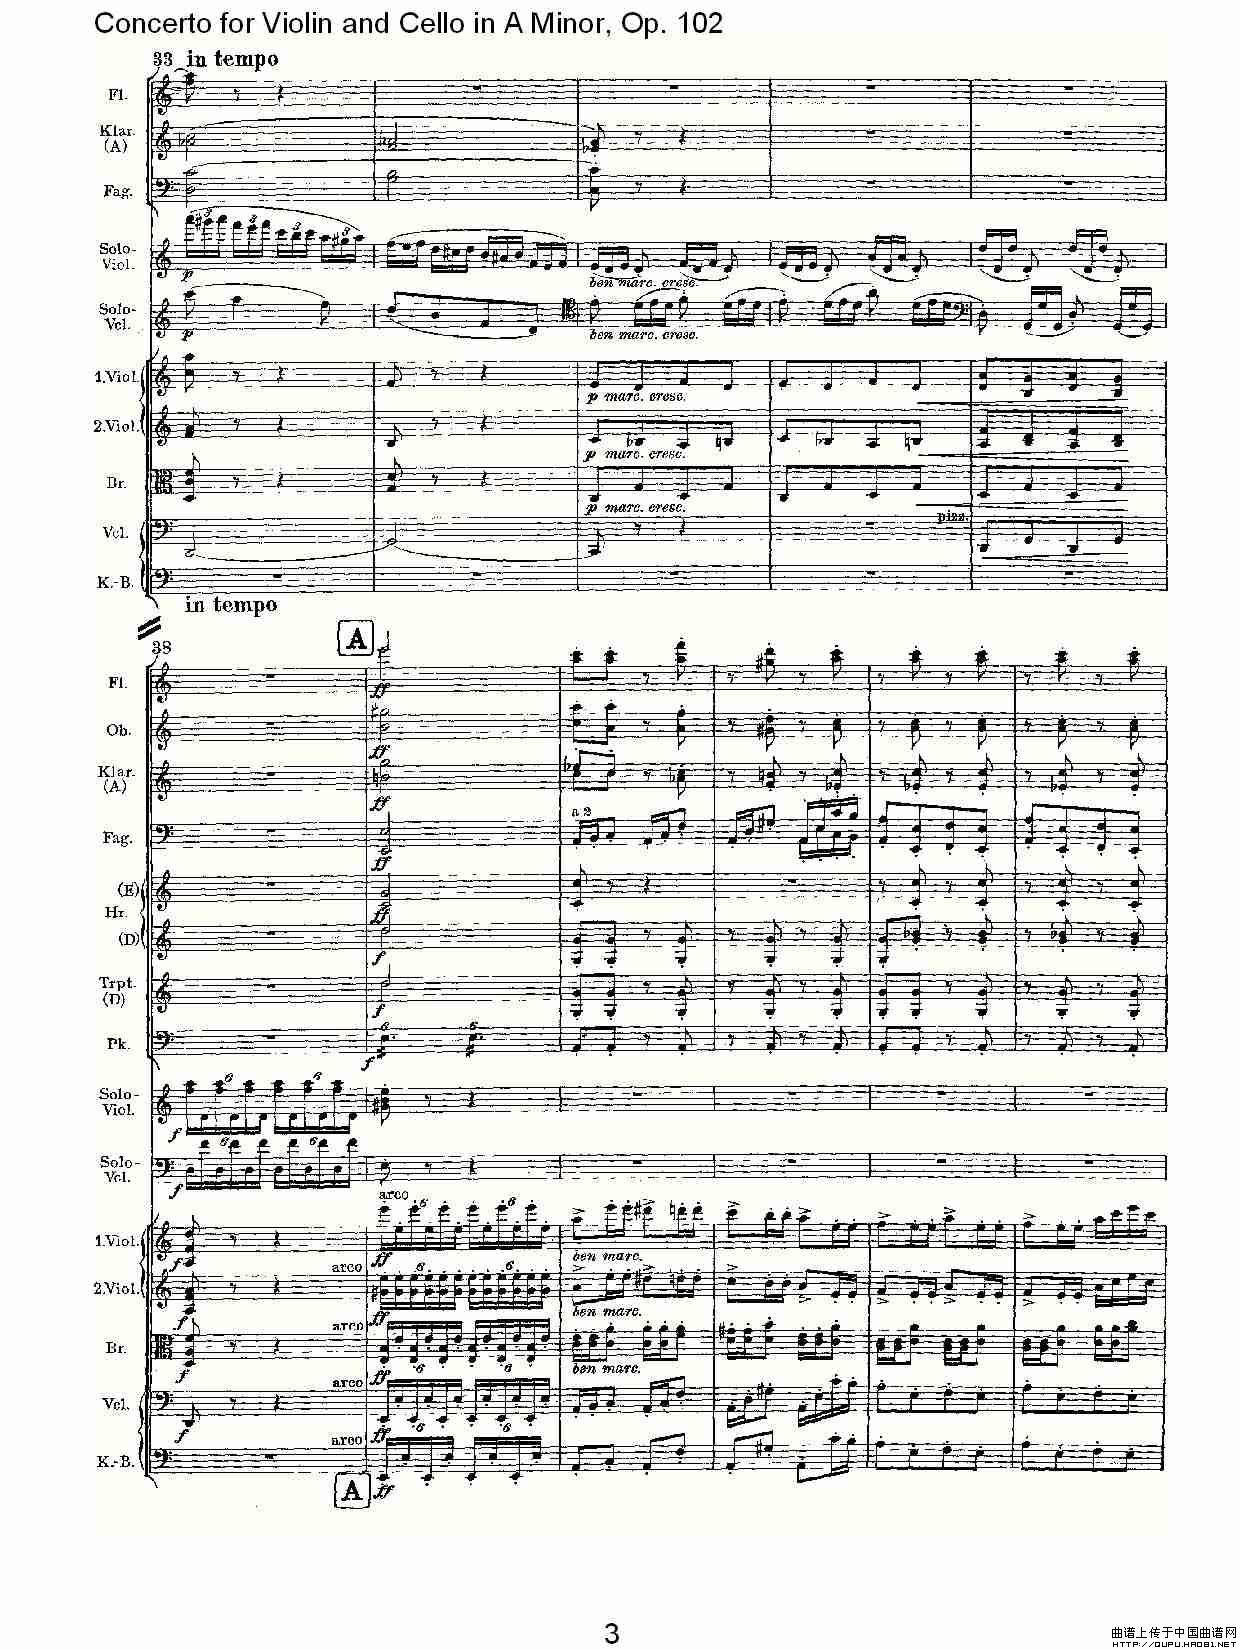 A小调小提琴与大提琴协奏曲, Op.102第三乐章小提琴谱